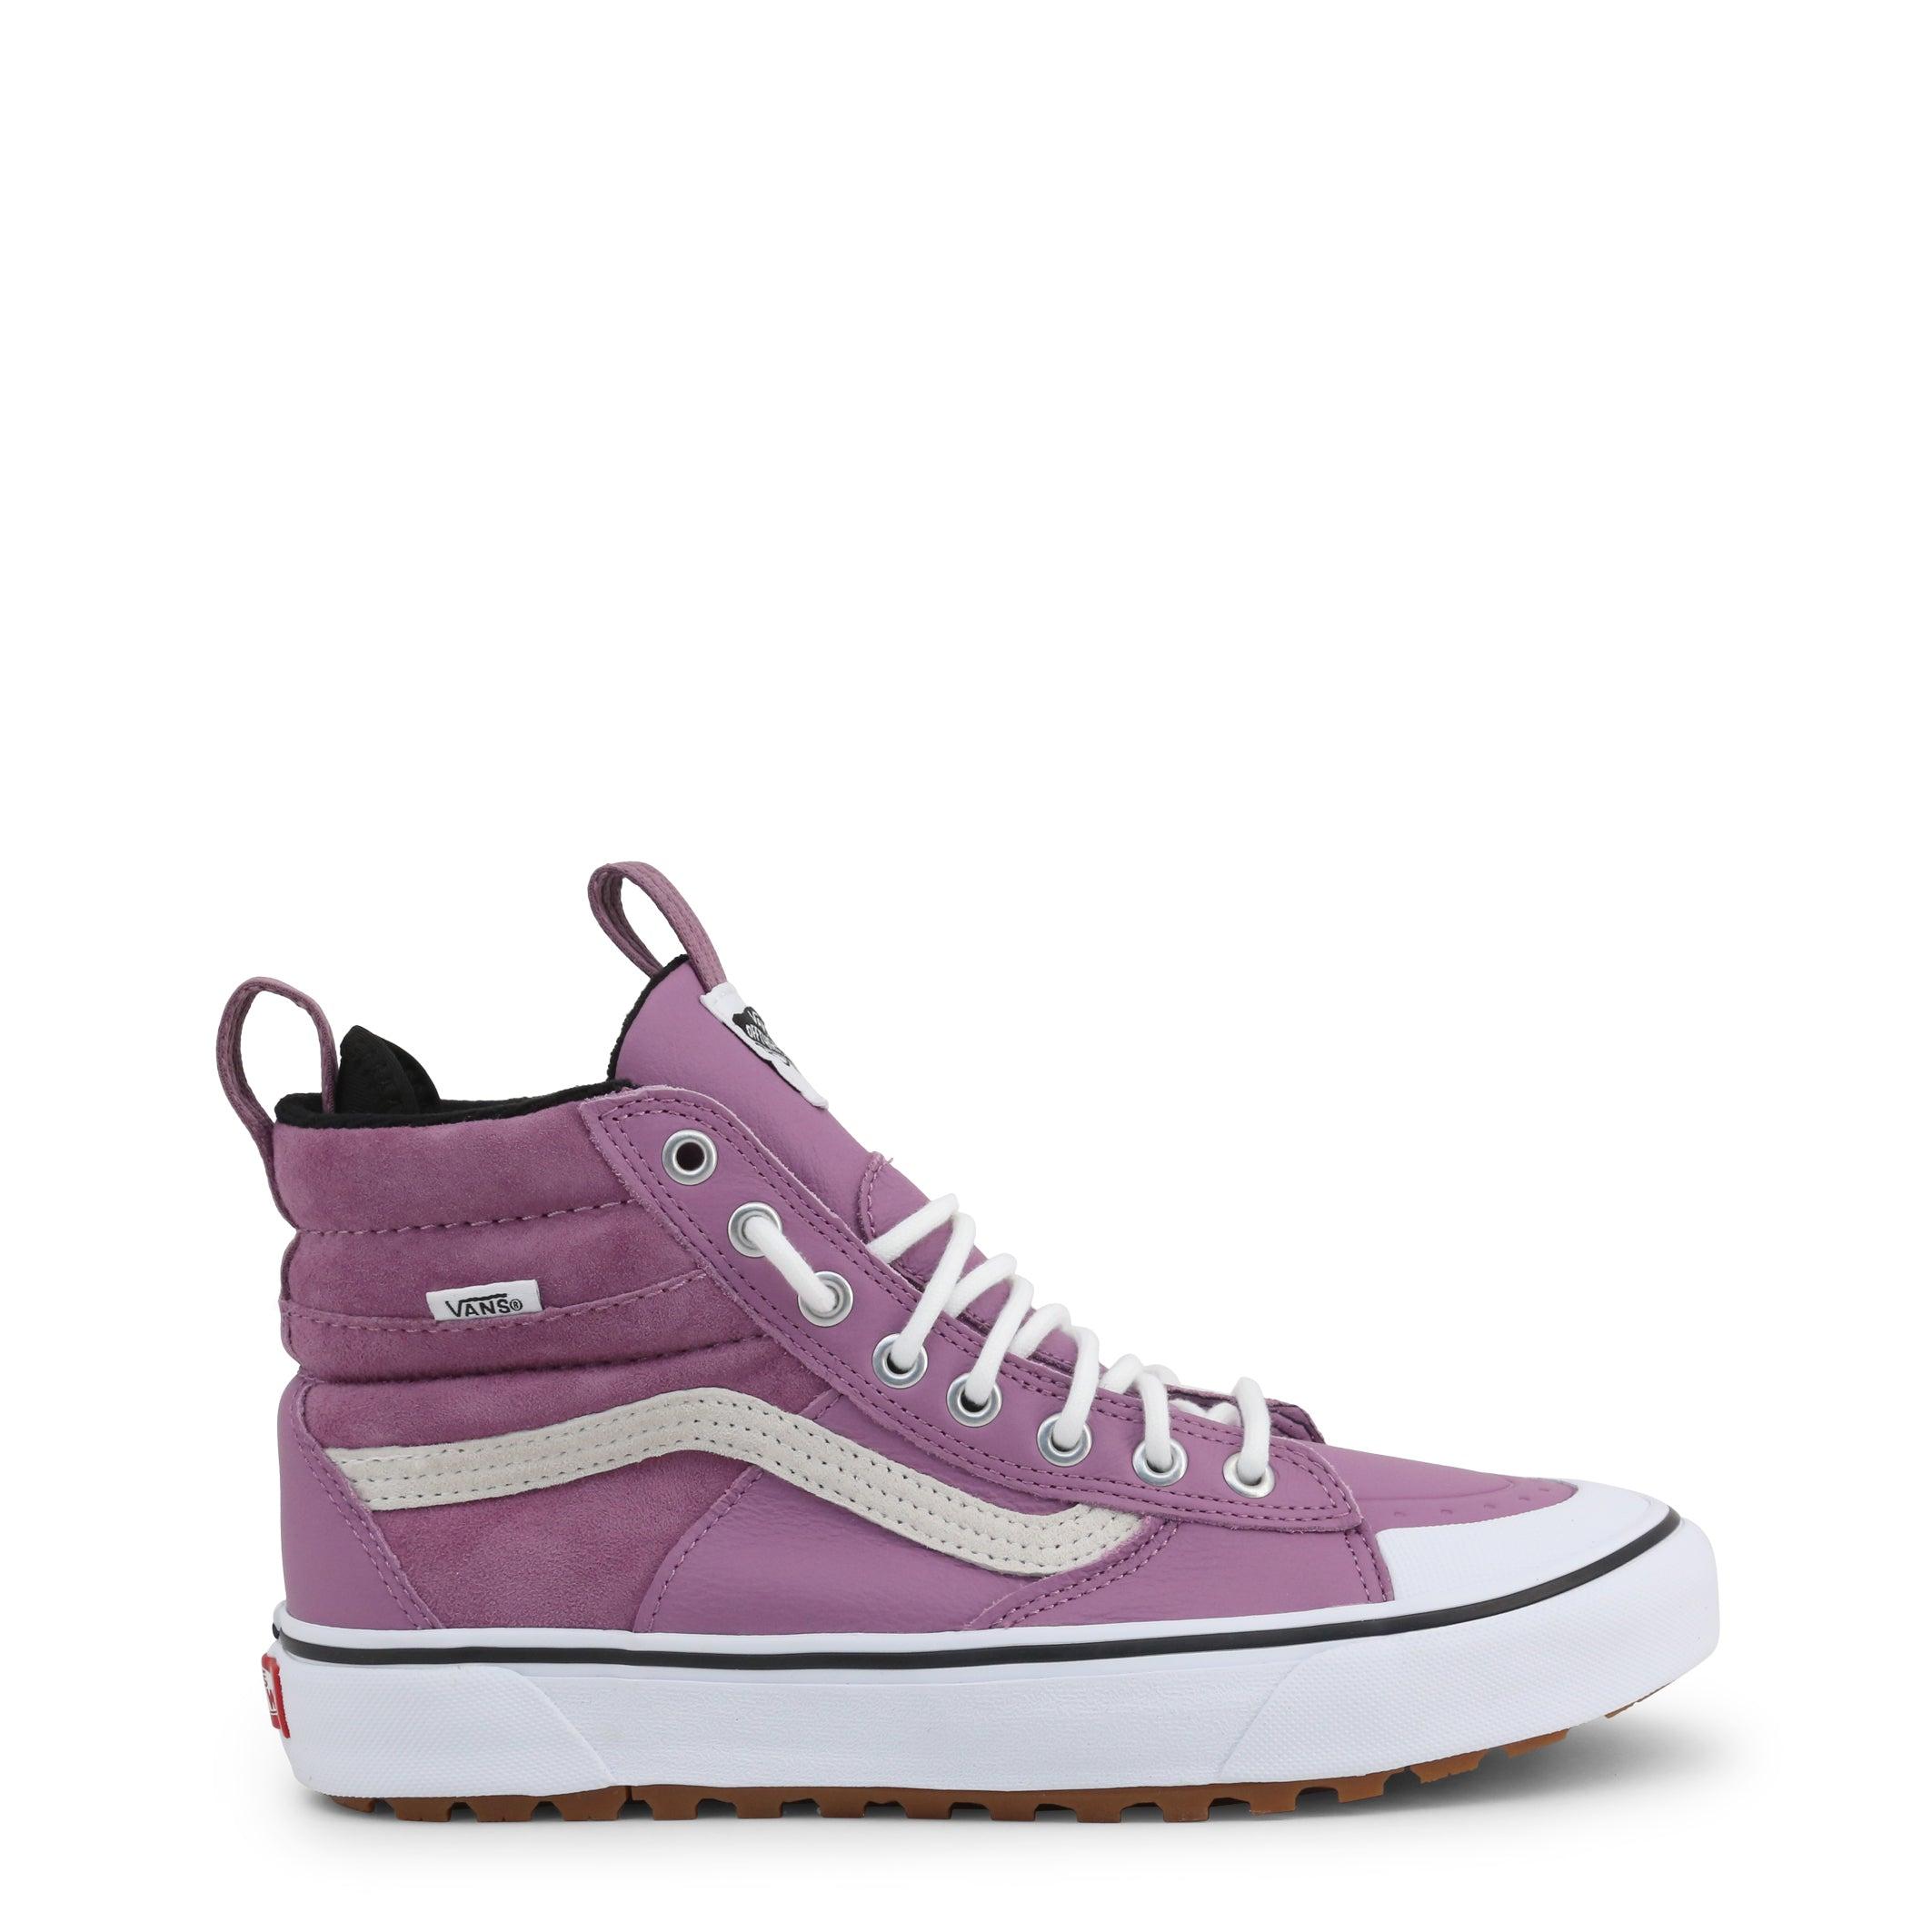 Vans Leather Sk8-hi-mte S Sneakers in Violet (Purple) - Save 53% | Lyst